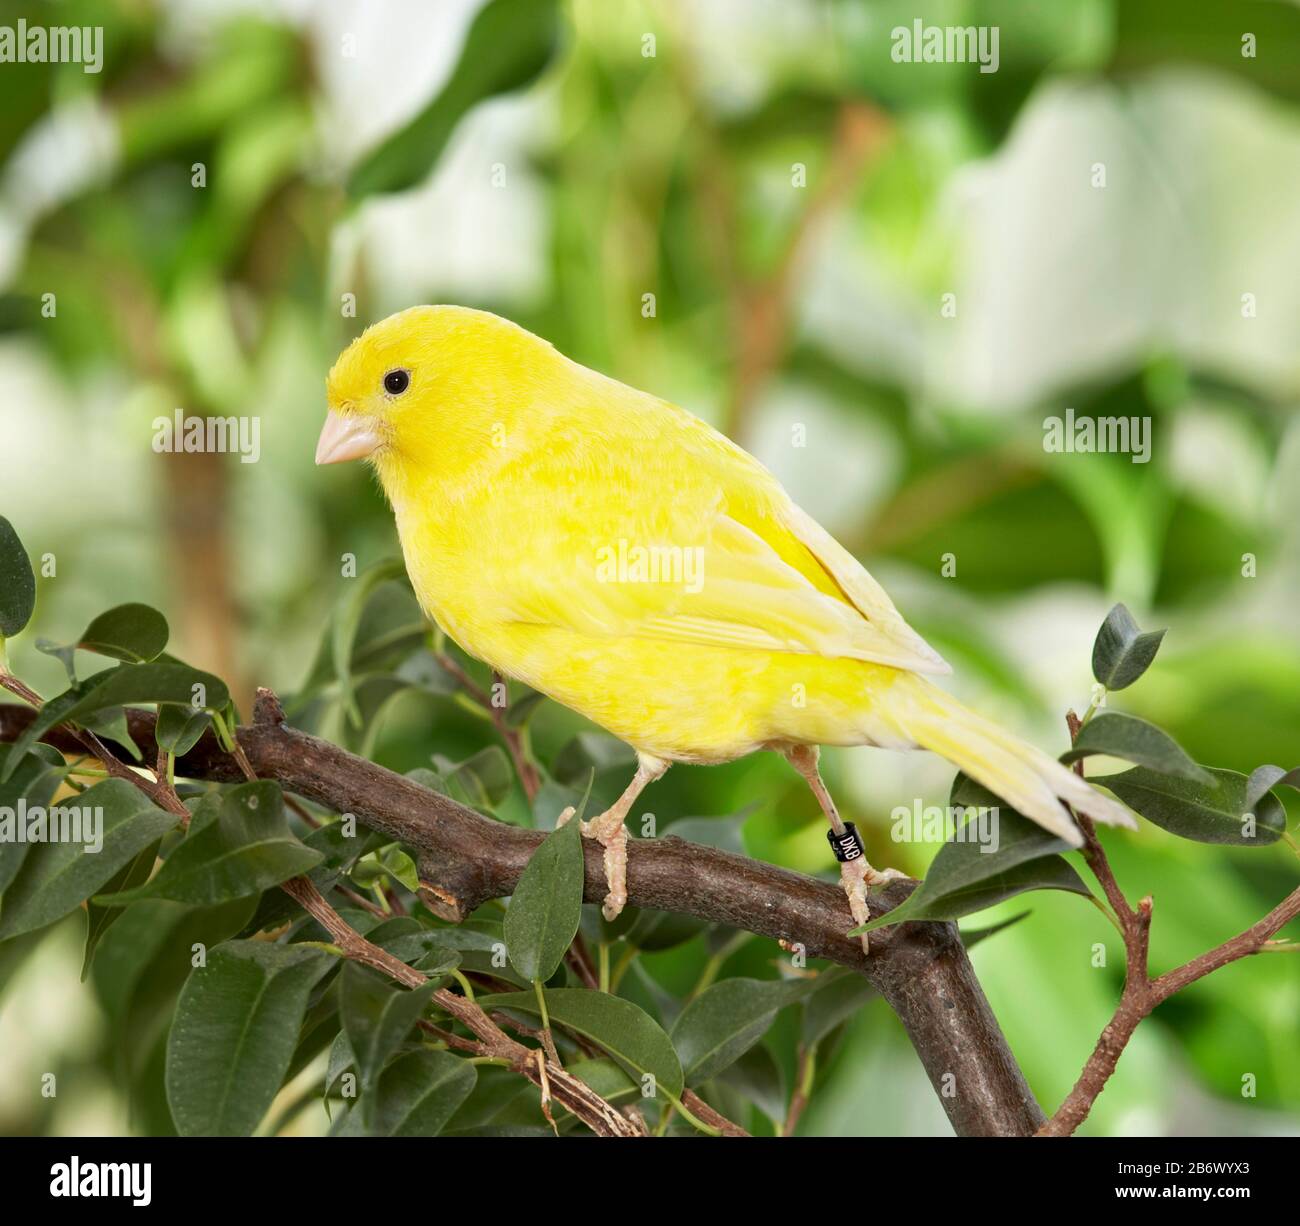 Inländische Kanarienvogel. Gelben Vogel auf einem Zweig Benjamin Abb.  thront. Deutschland Stockfotografie - Alamy